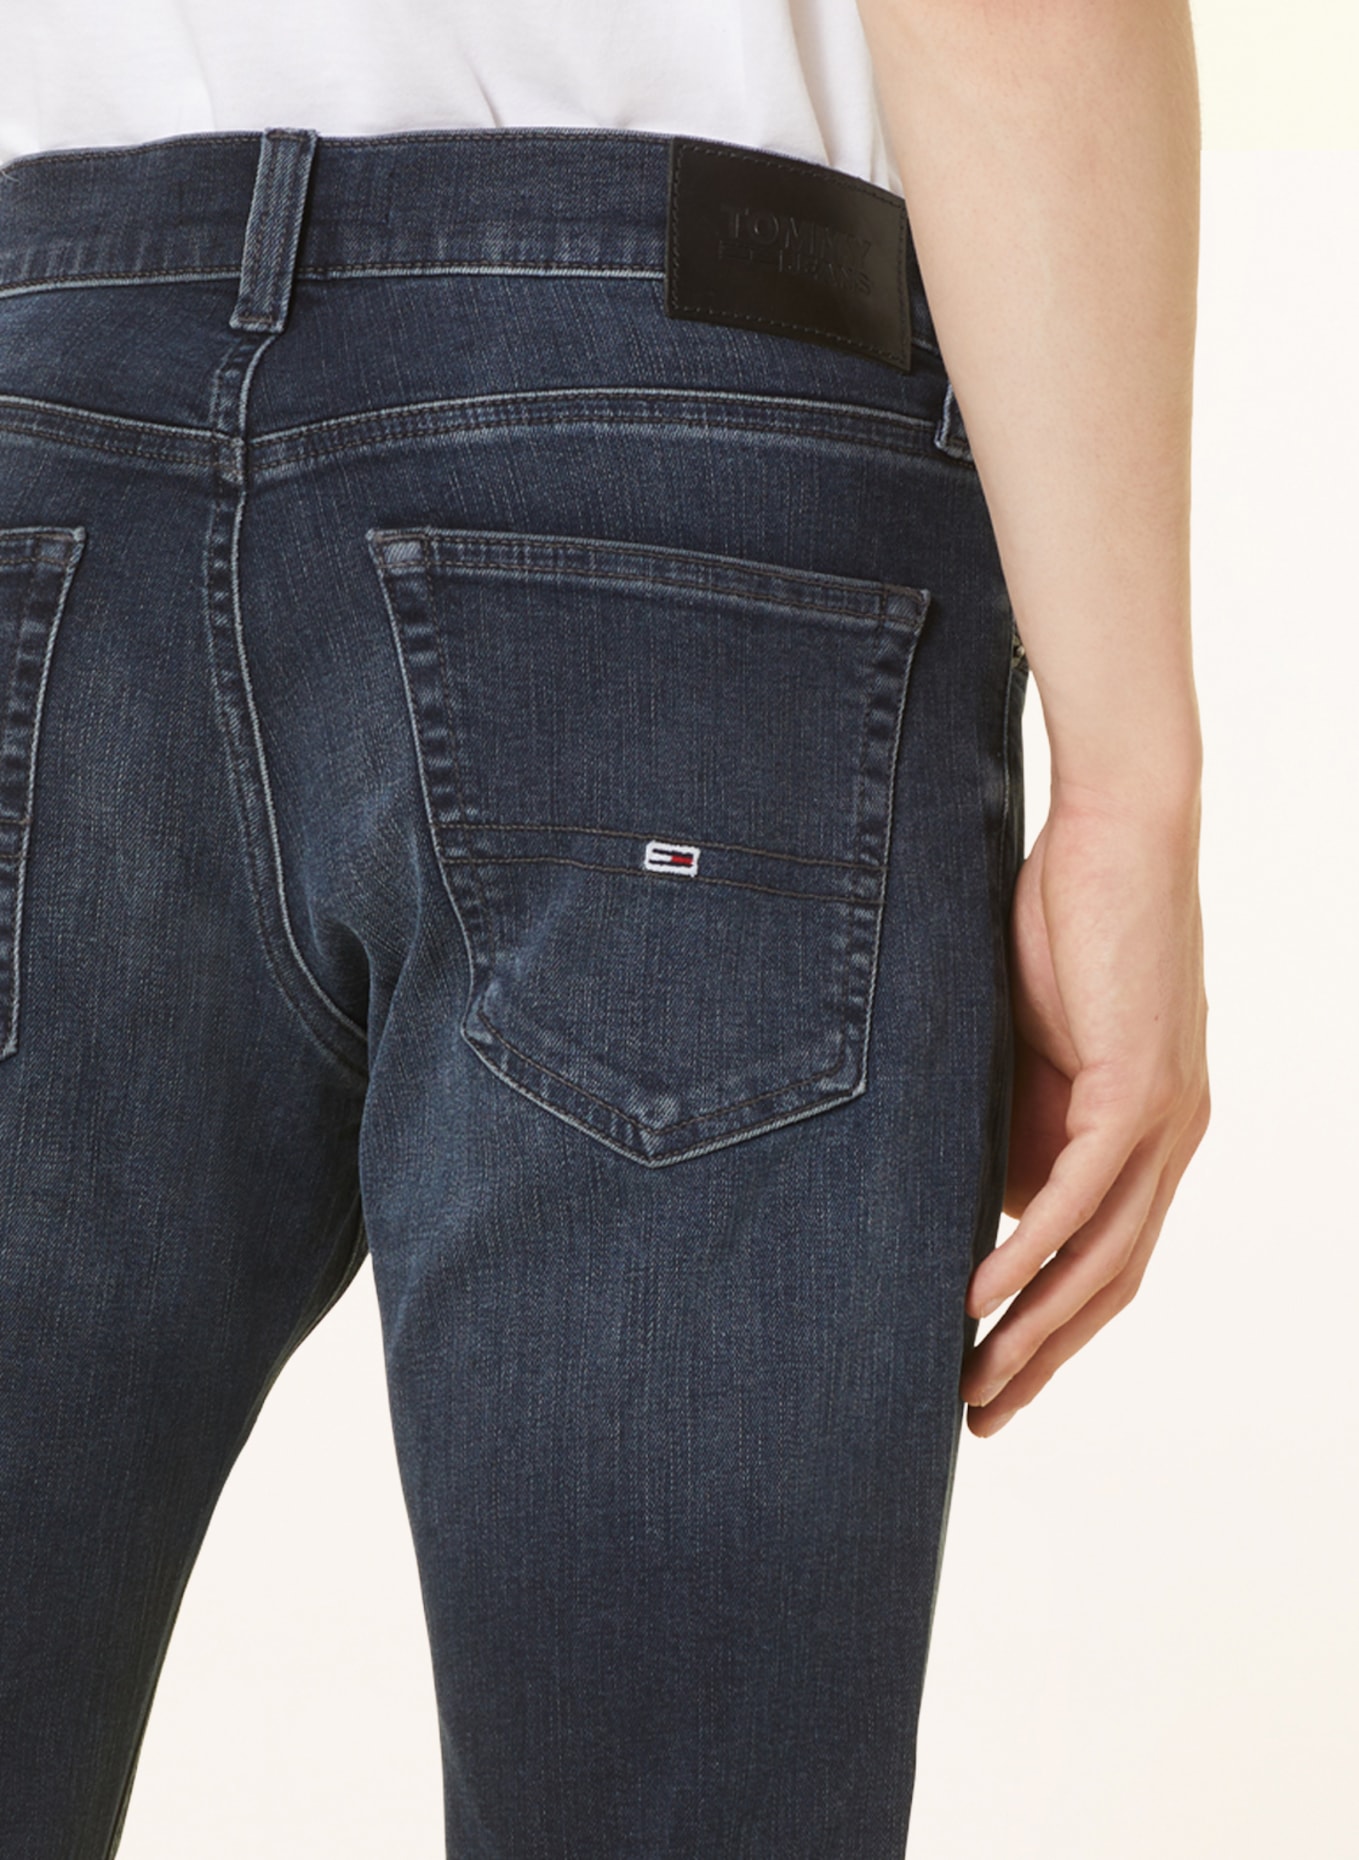 TOMMY JEANS Jeans SCANTON Slim Fit, Farbe: 1BK Denim Dark (Bild 5)